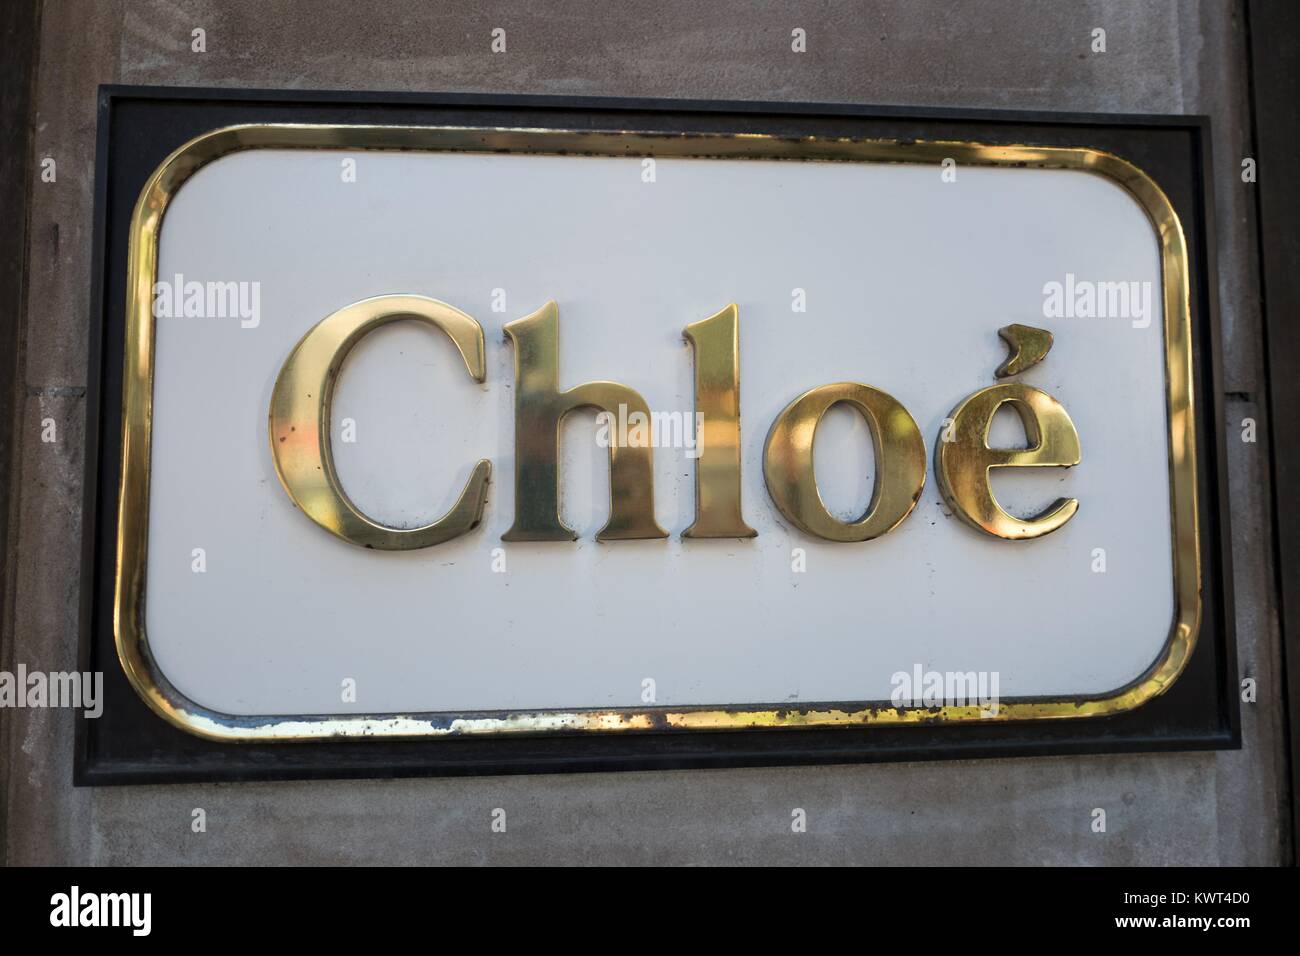 In der Nähe von Beschilderungen für Chloe upscale Boutique auf der Madison Avenue in der Upper East Side von Manhattan, New York City, New York, 15. September 2017. () Stockfoto